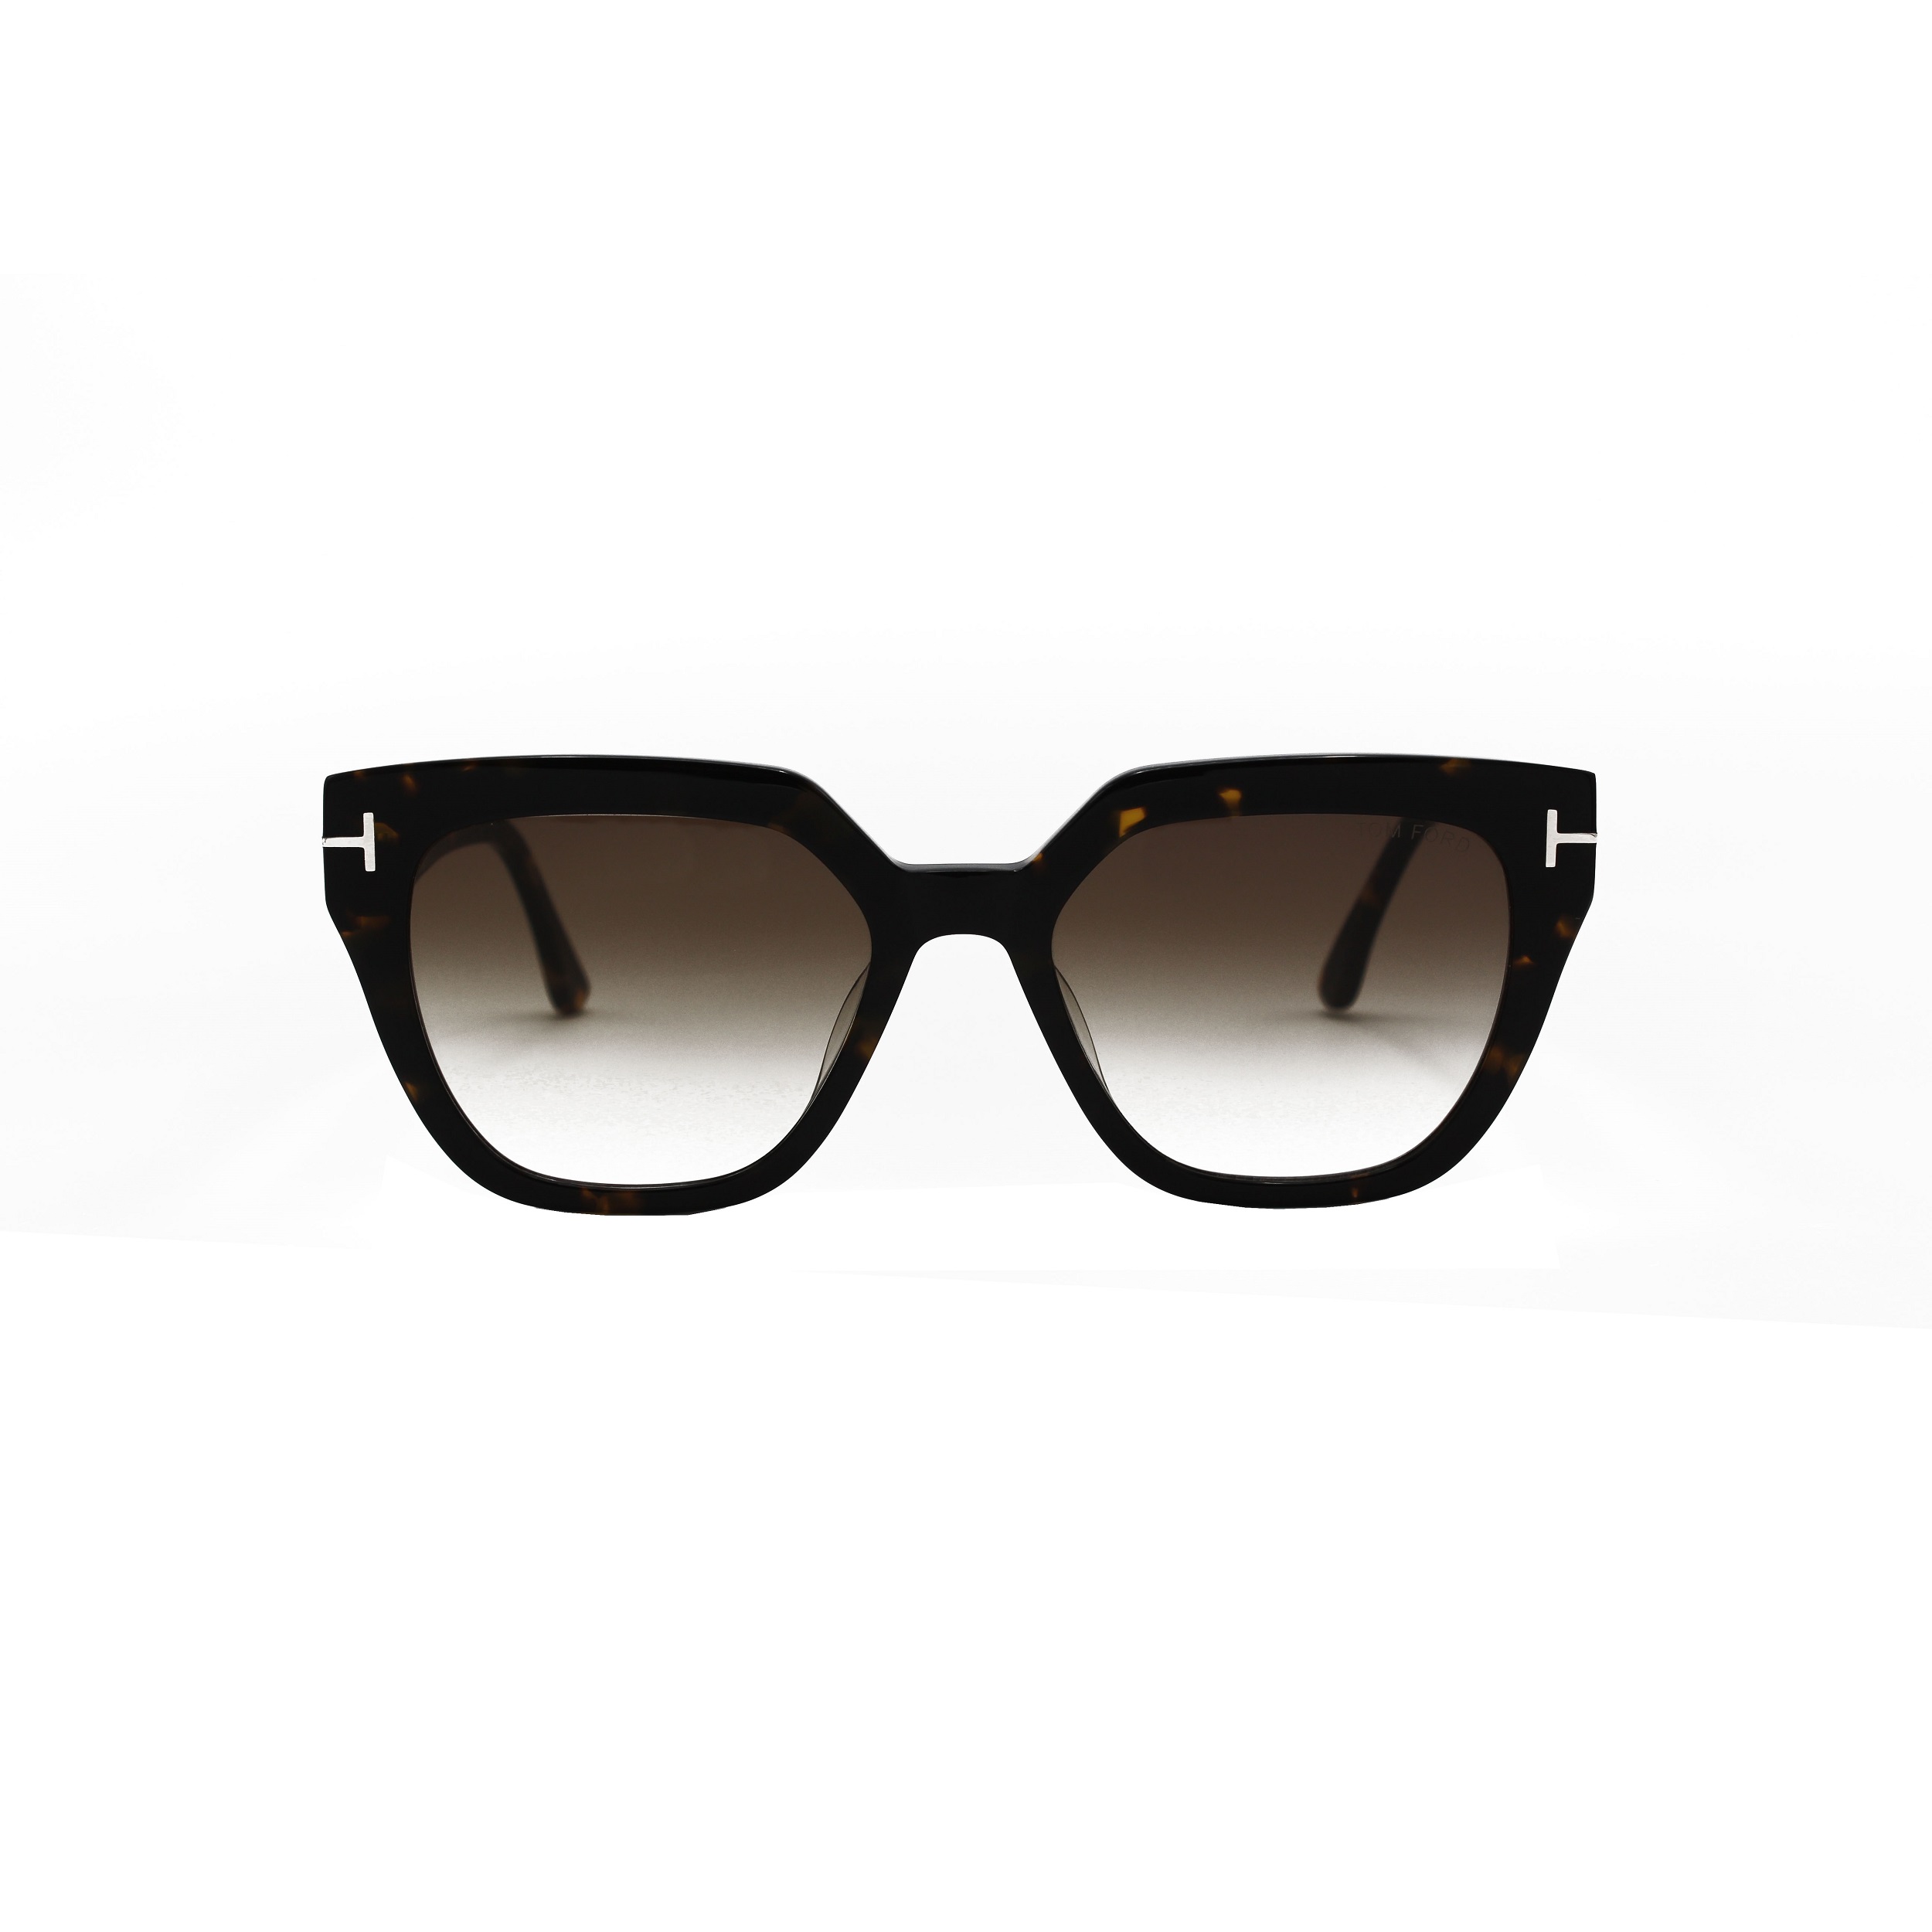 عینک آفتابی تام فورد مدل tf 939 phoebe 052